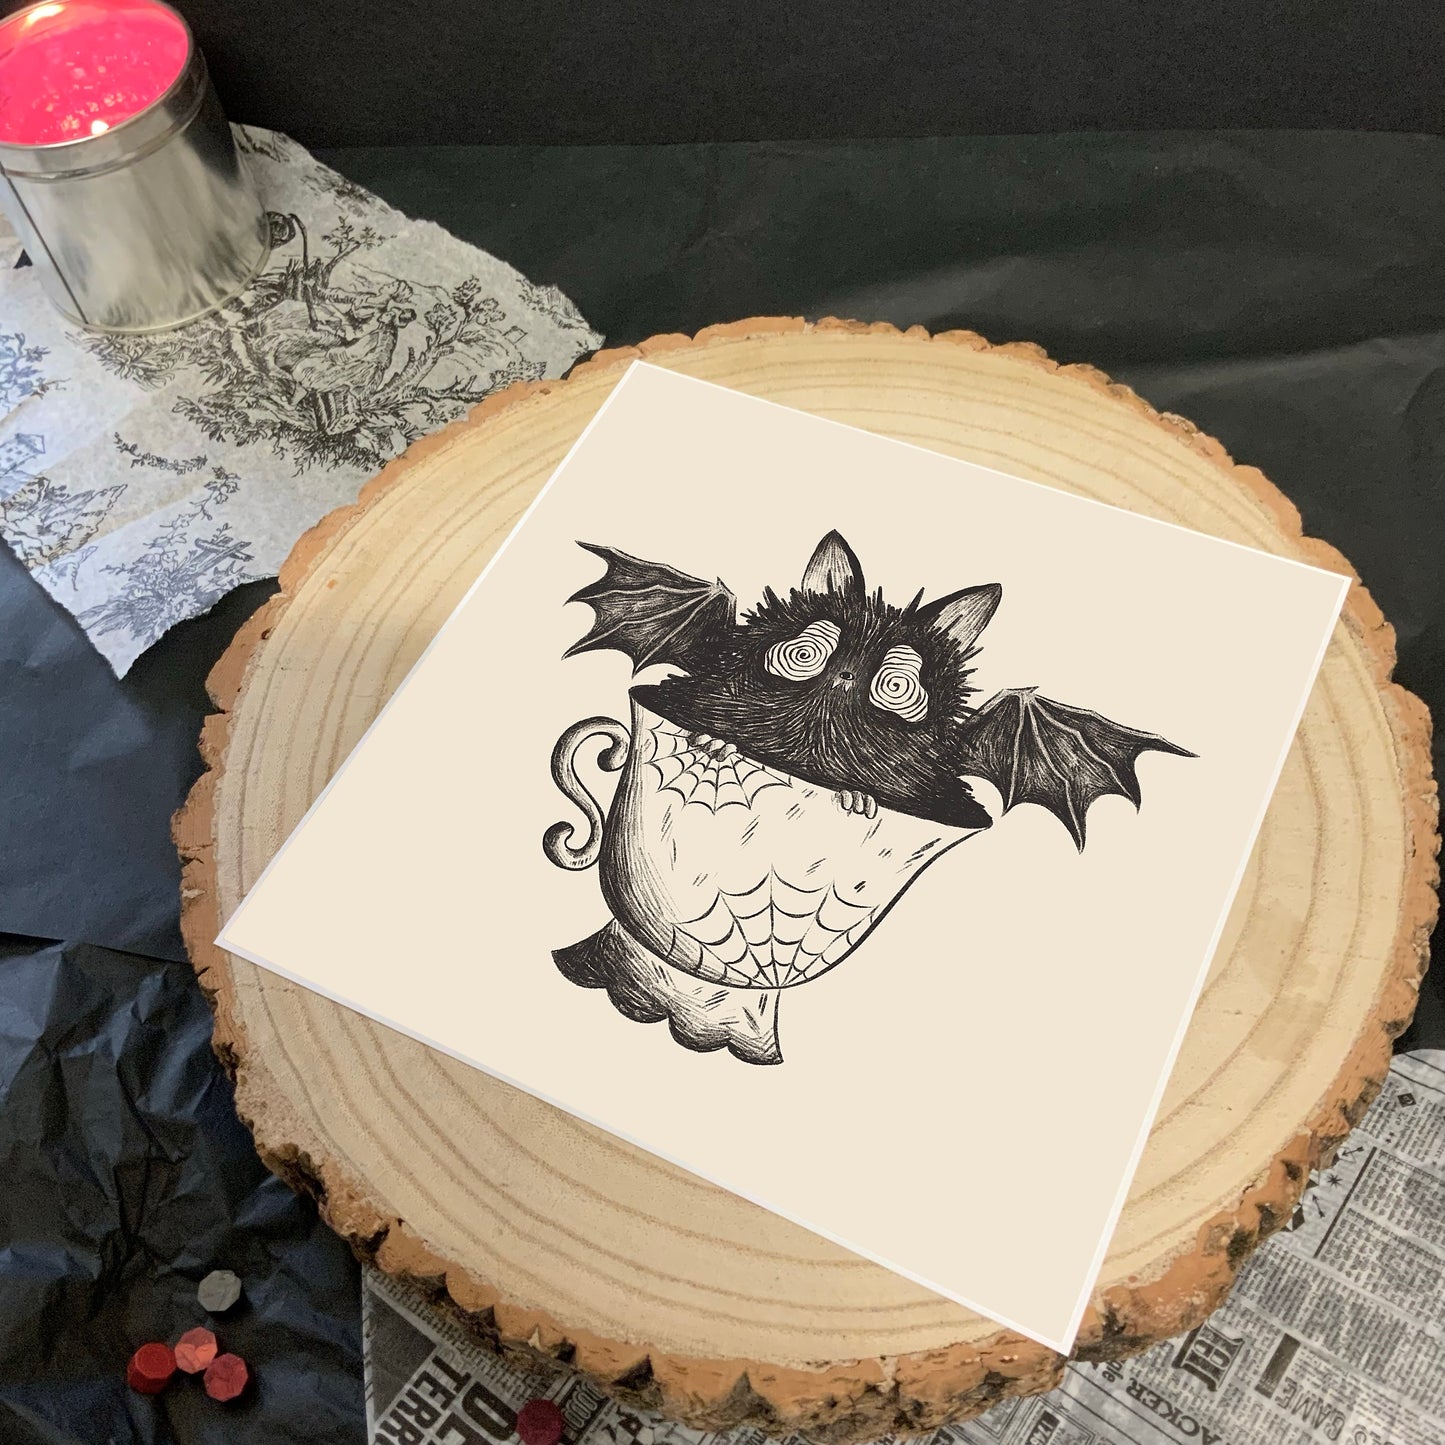 Bat In A Teacup Art Print